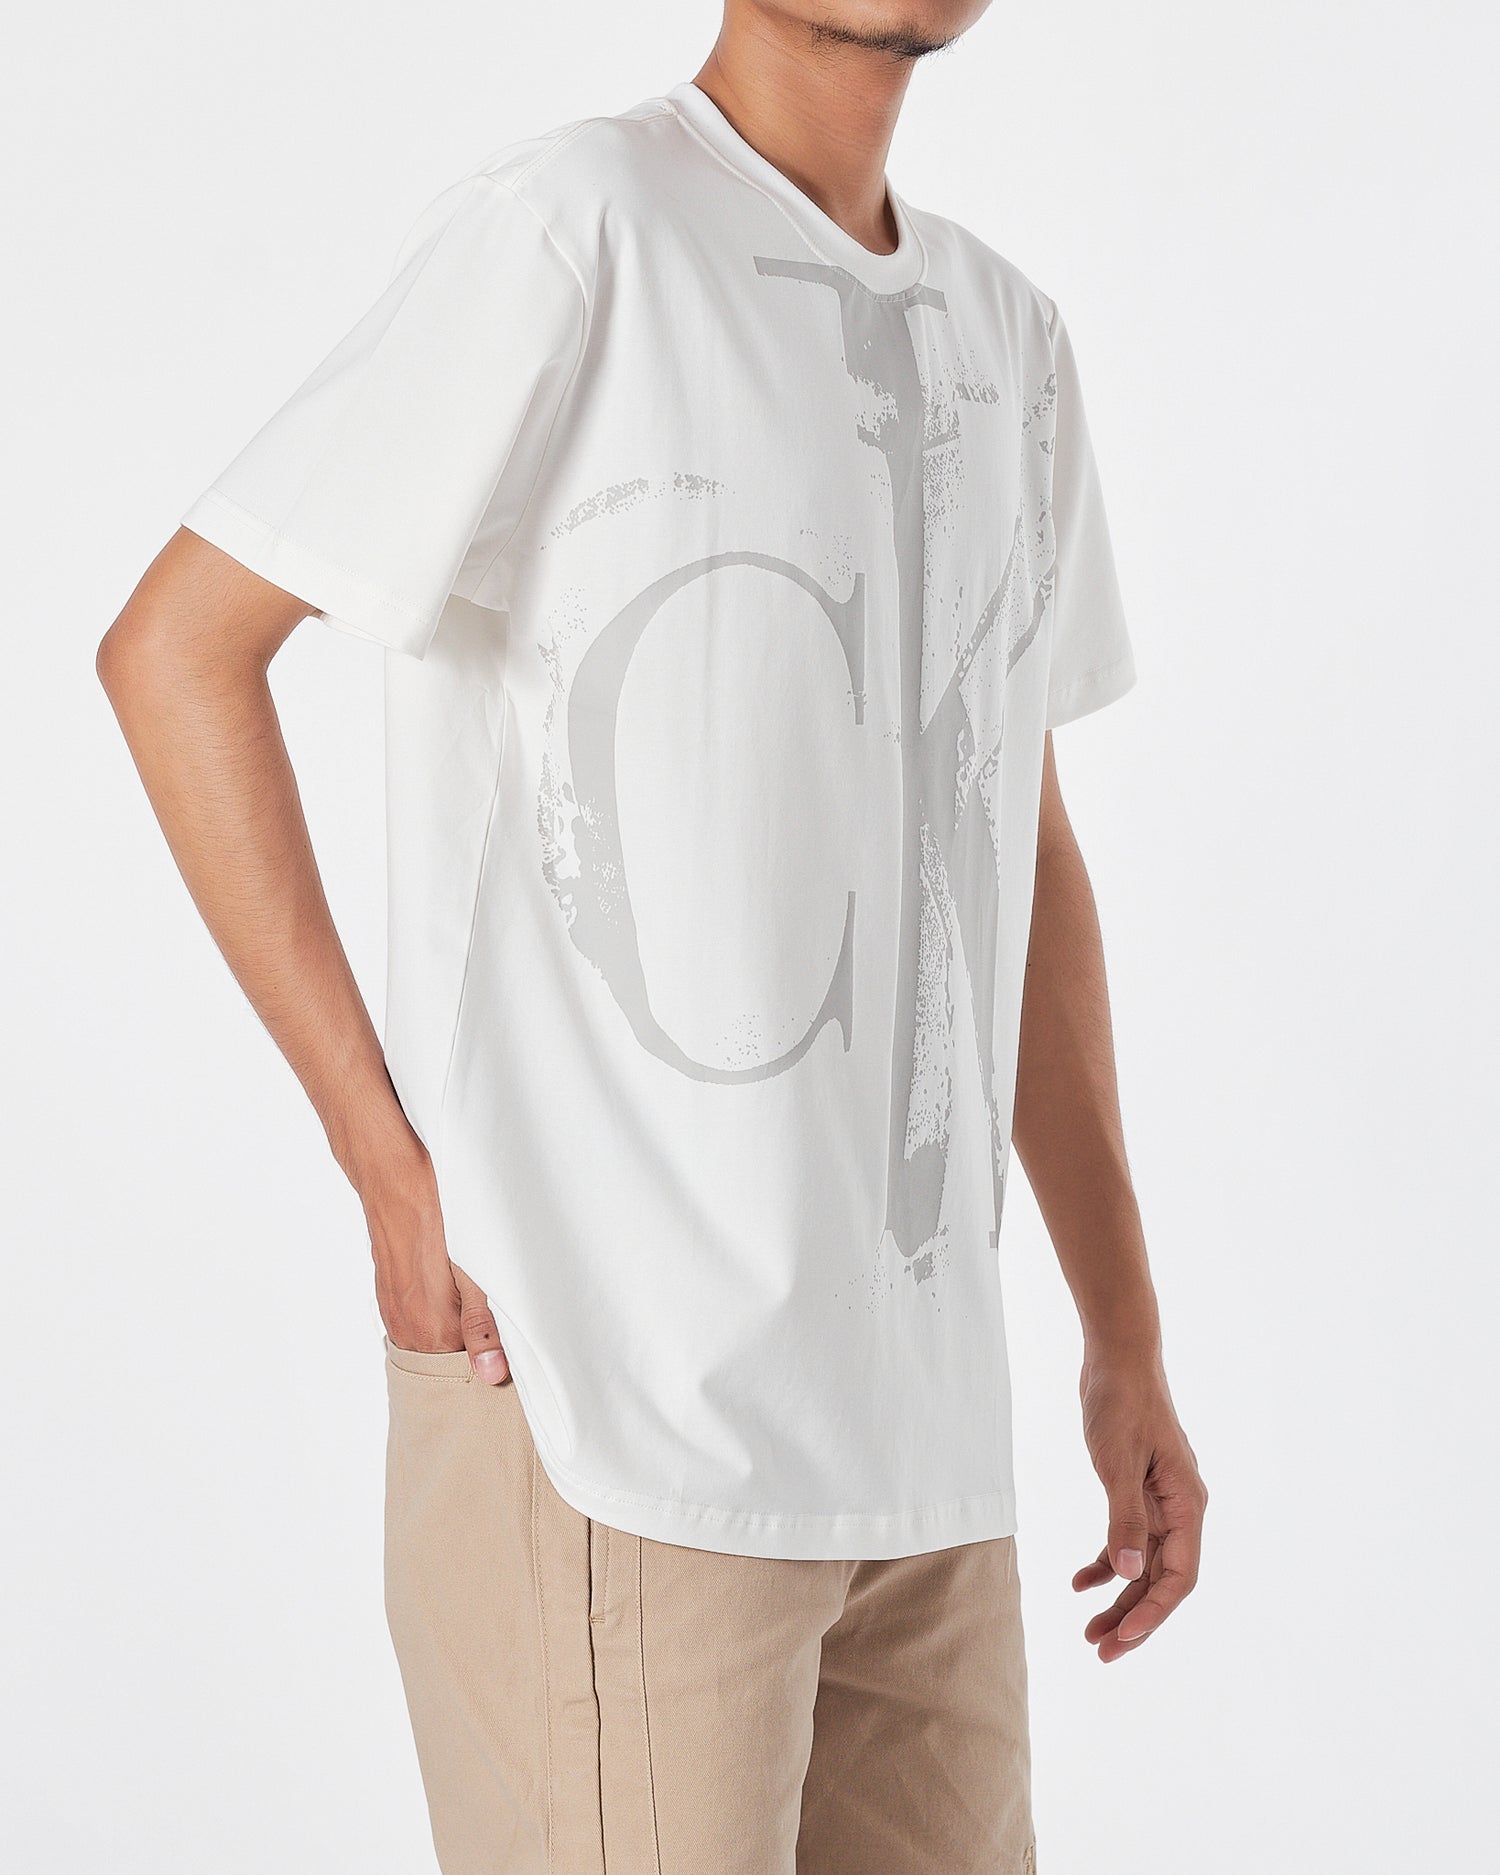 CK Logo Printed Men White  T-Shirt 16.90